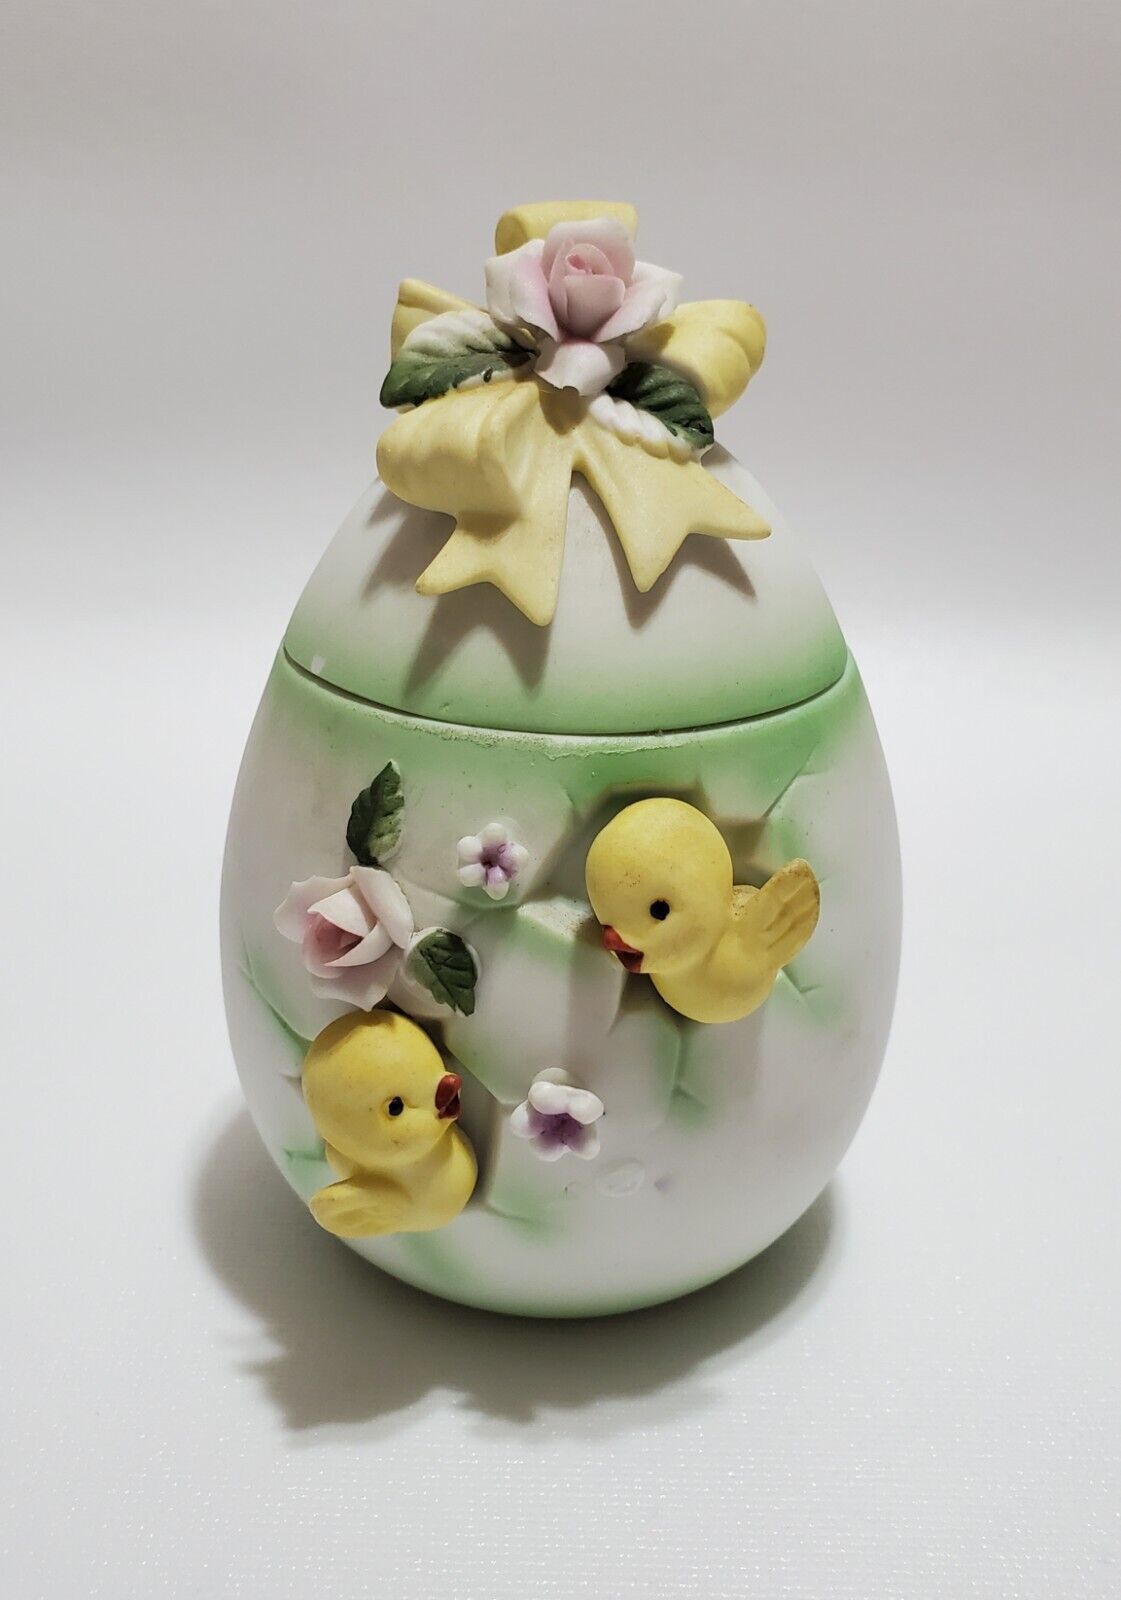 Vintage 1950s Lefton Roses & Chicks Decorative Egg Trinket Box, Bisque Porcelain